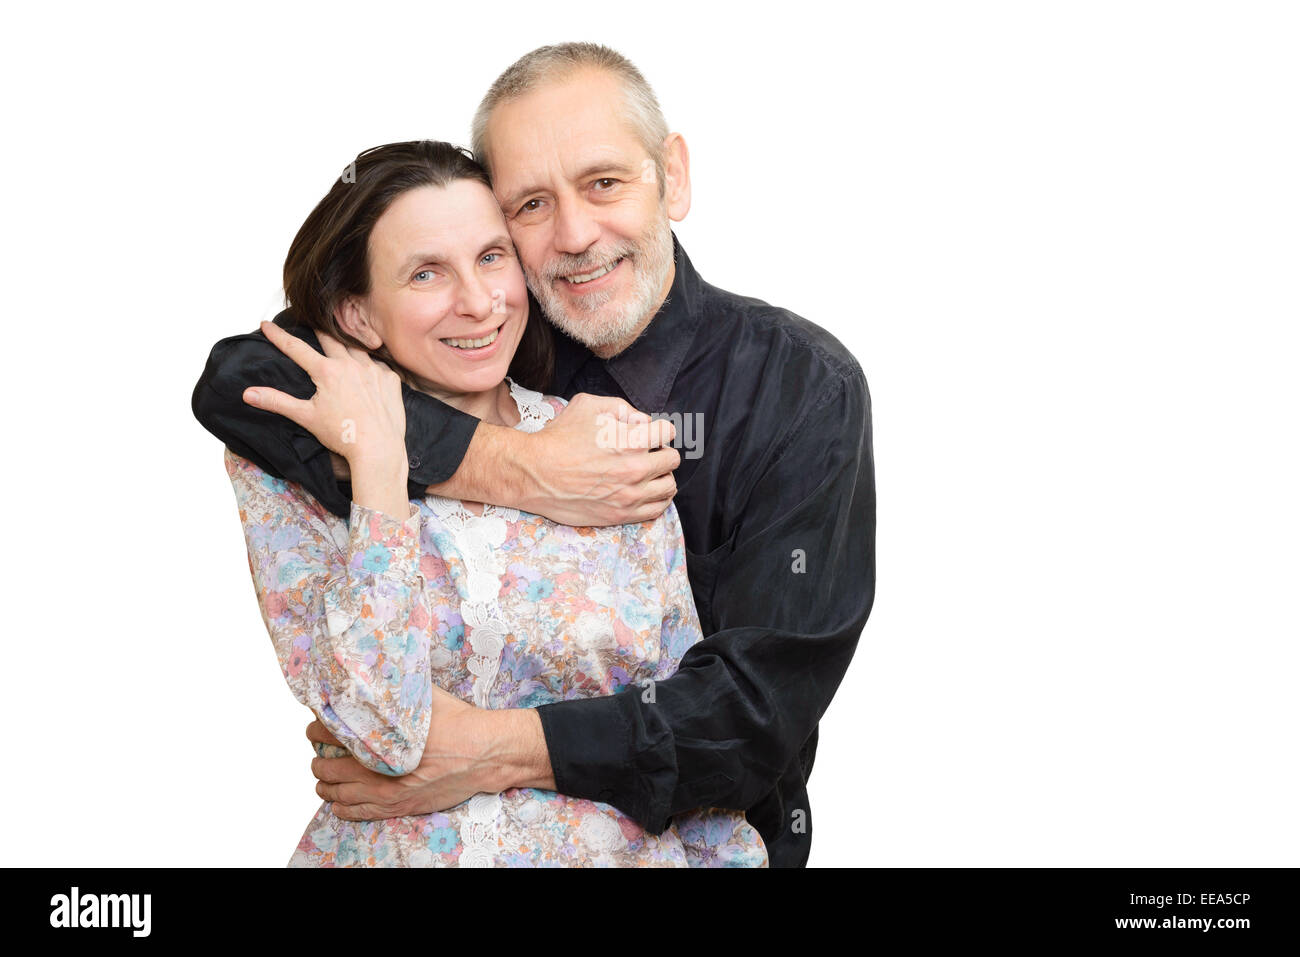 Glücklich Erwachsenen Mann und Frau Lächeln für S. Valentin Tag oder ein Jubiläum und umarmen einander. Isoliert auf weißem Hintergrund. Stockfoto